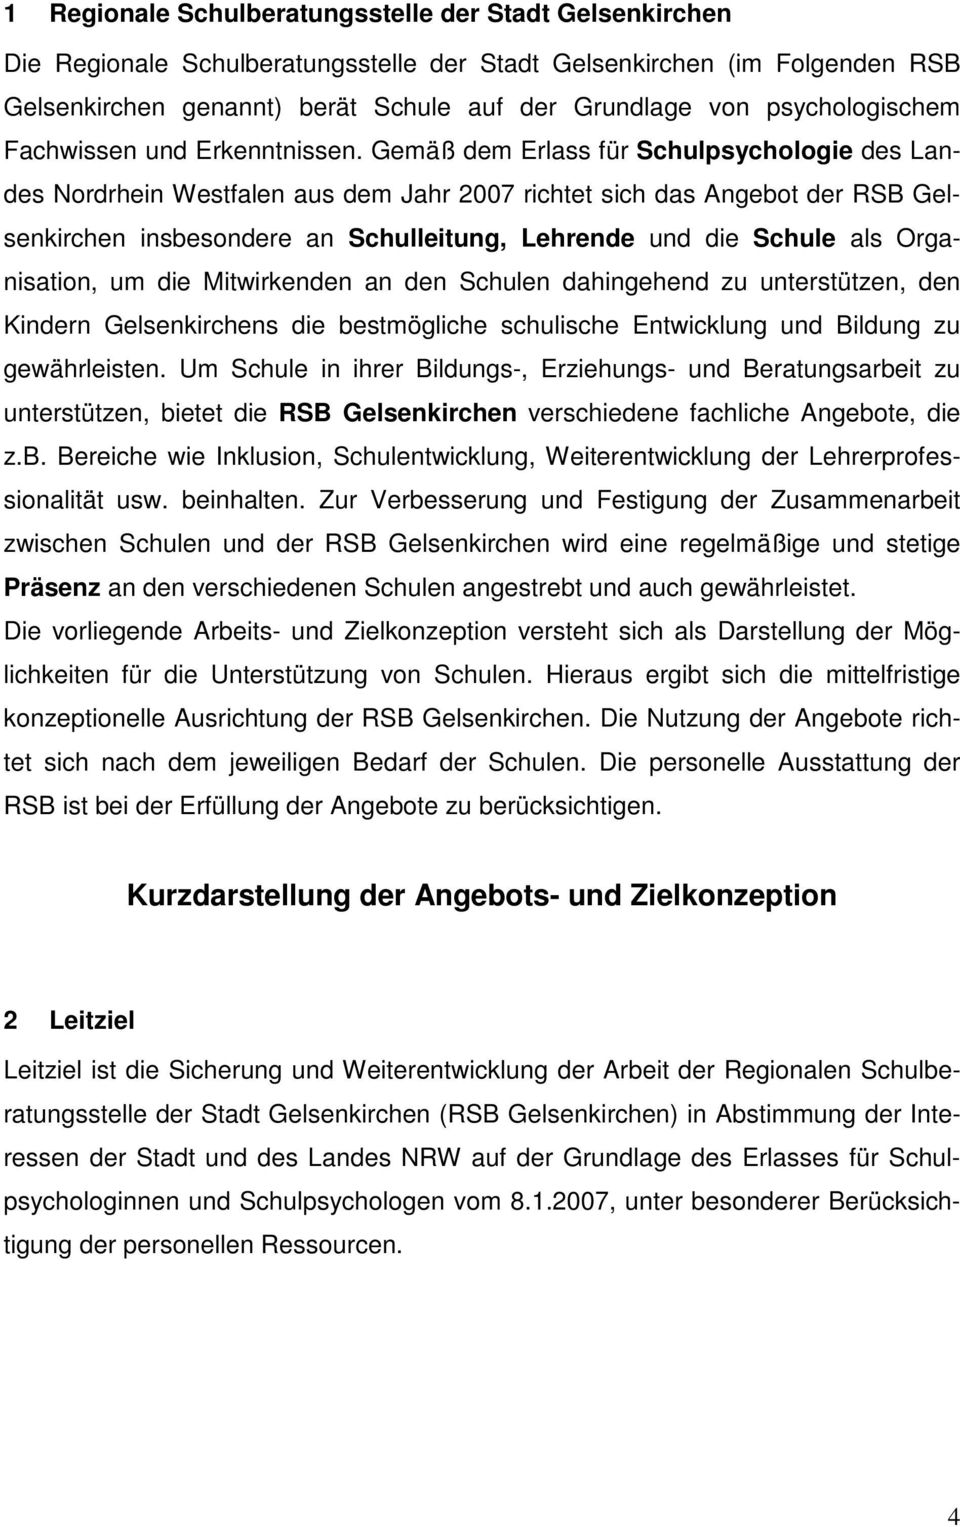 Gemäß dem Erlass für Schulpsychologie des Landes Nordrhein Westfalen aus dem Jahr 2007 richtet sich das Angebot der RSB Gelsenkirchen insbesondere an Schulleitung, Lehrende und die Schule als